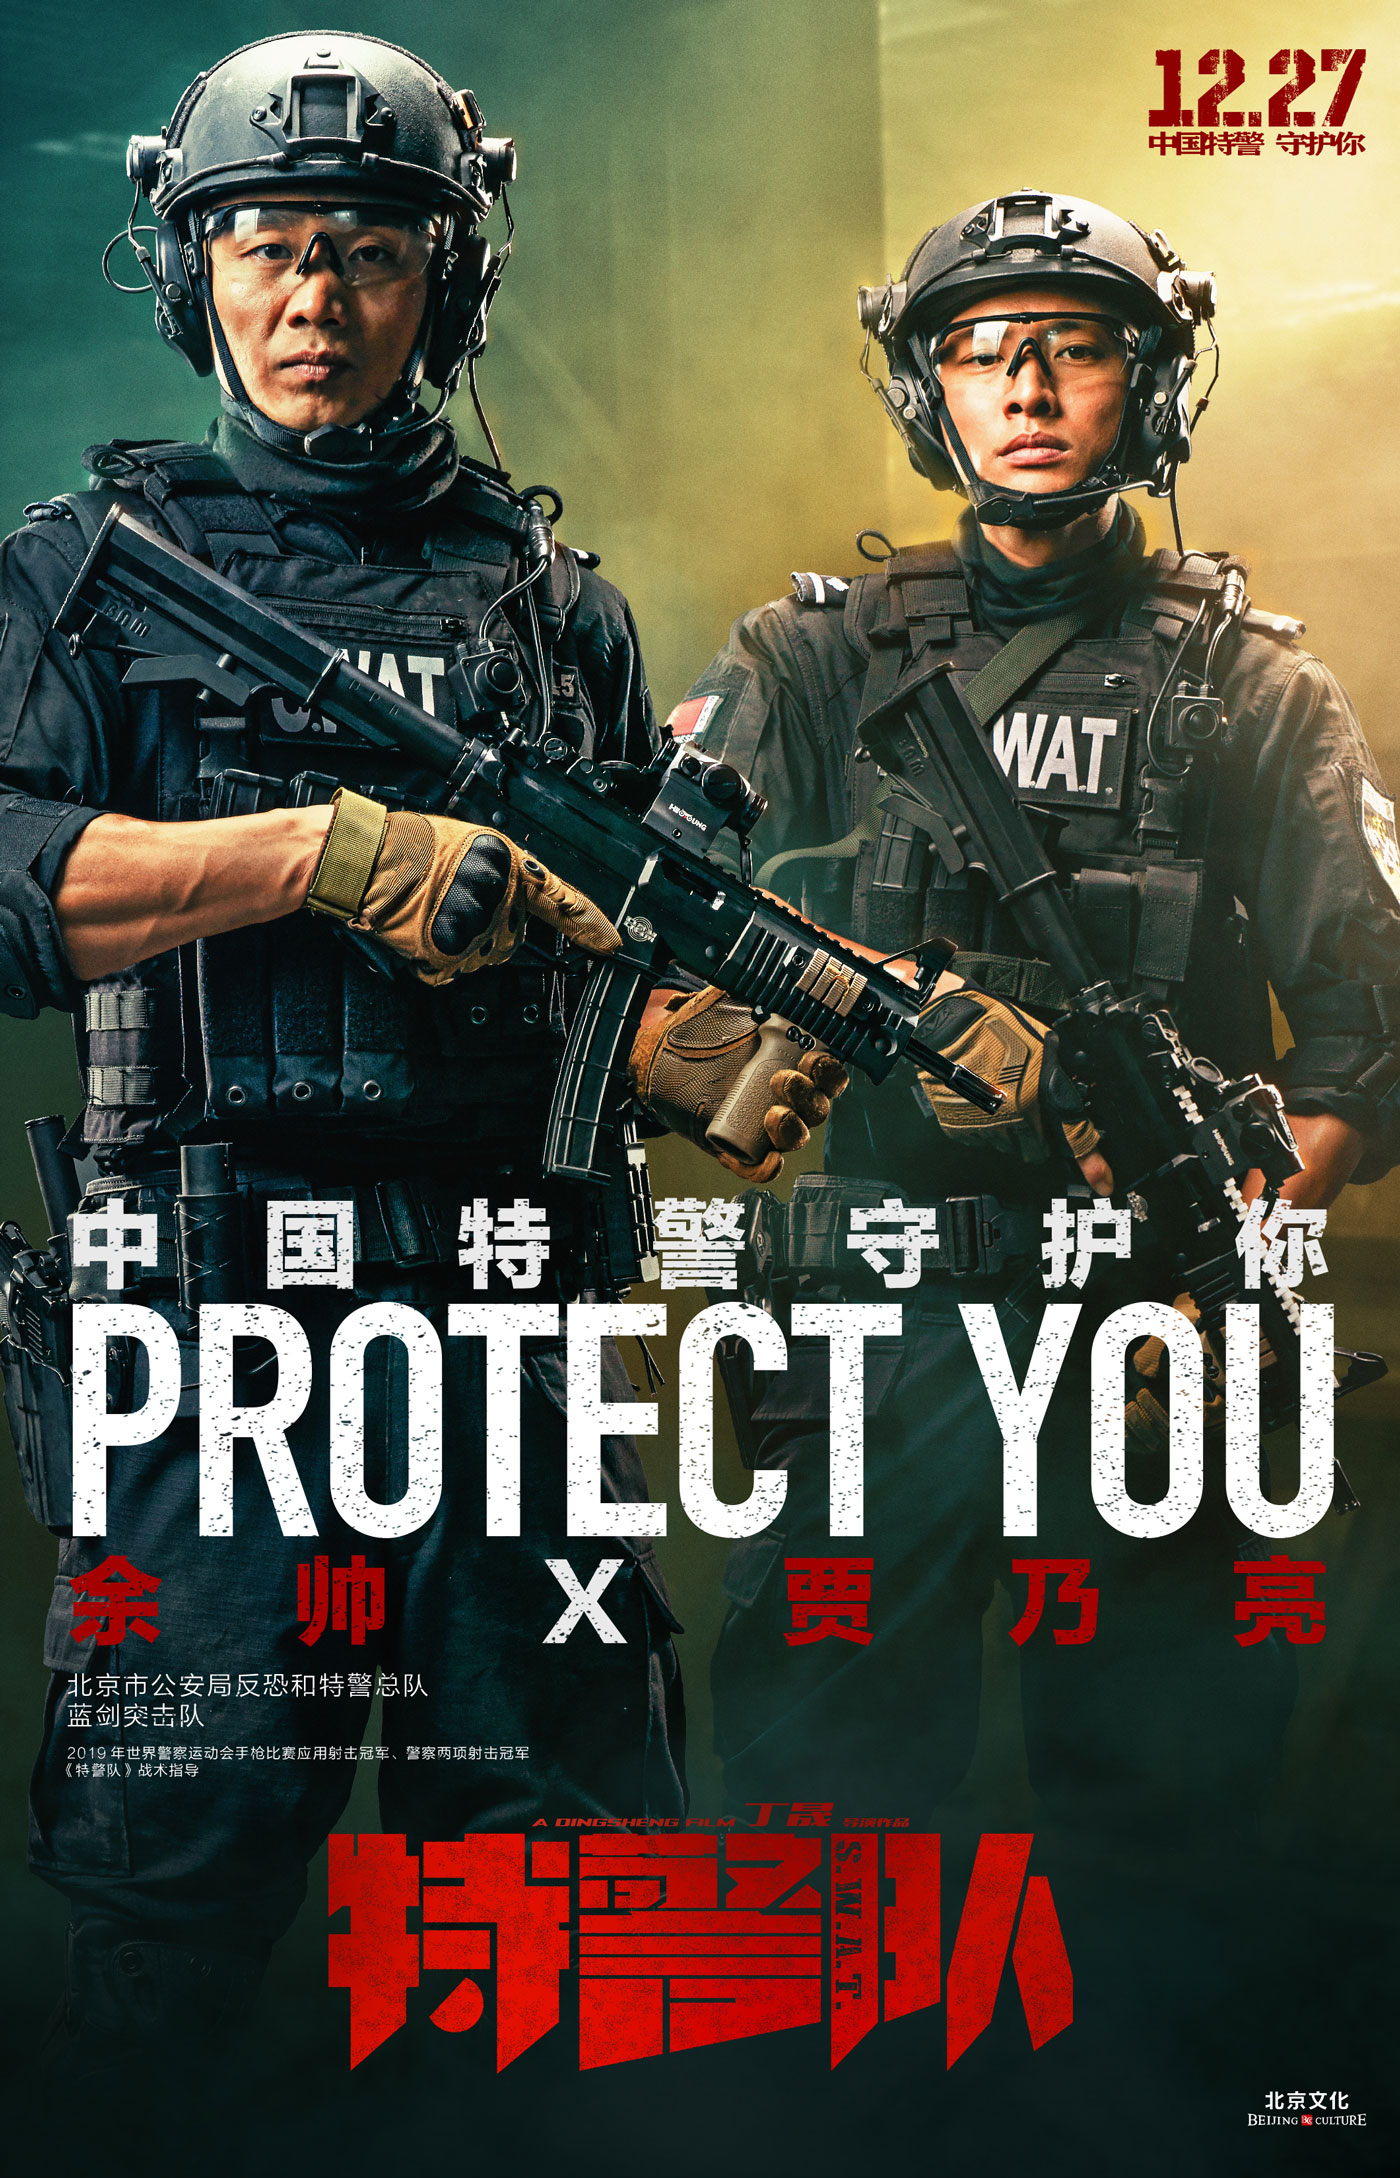 《特警队》“守护”海报曝光 致敬中国特警